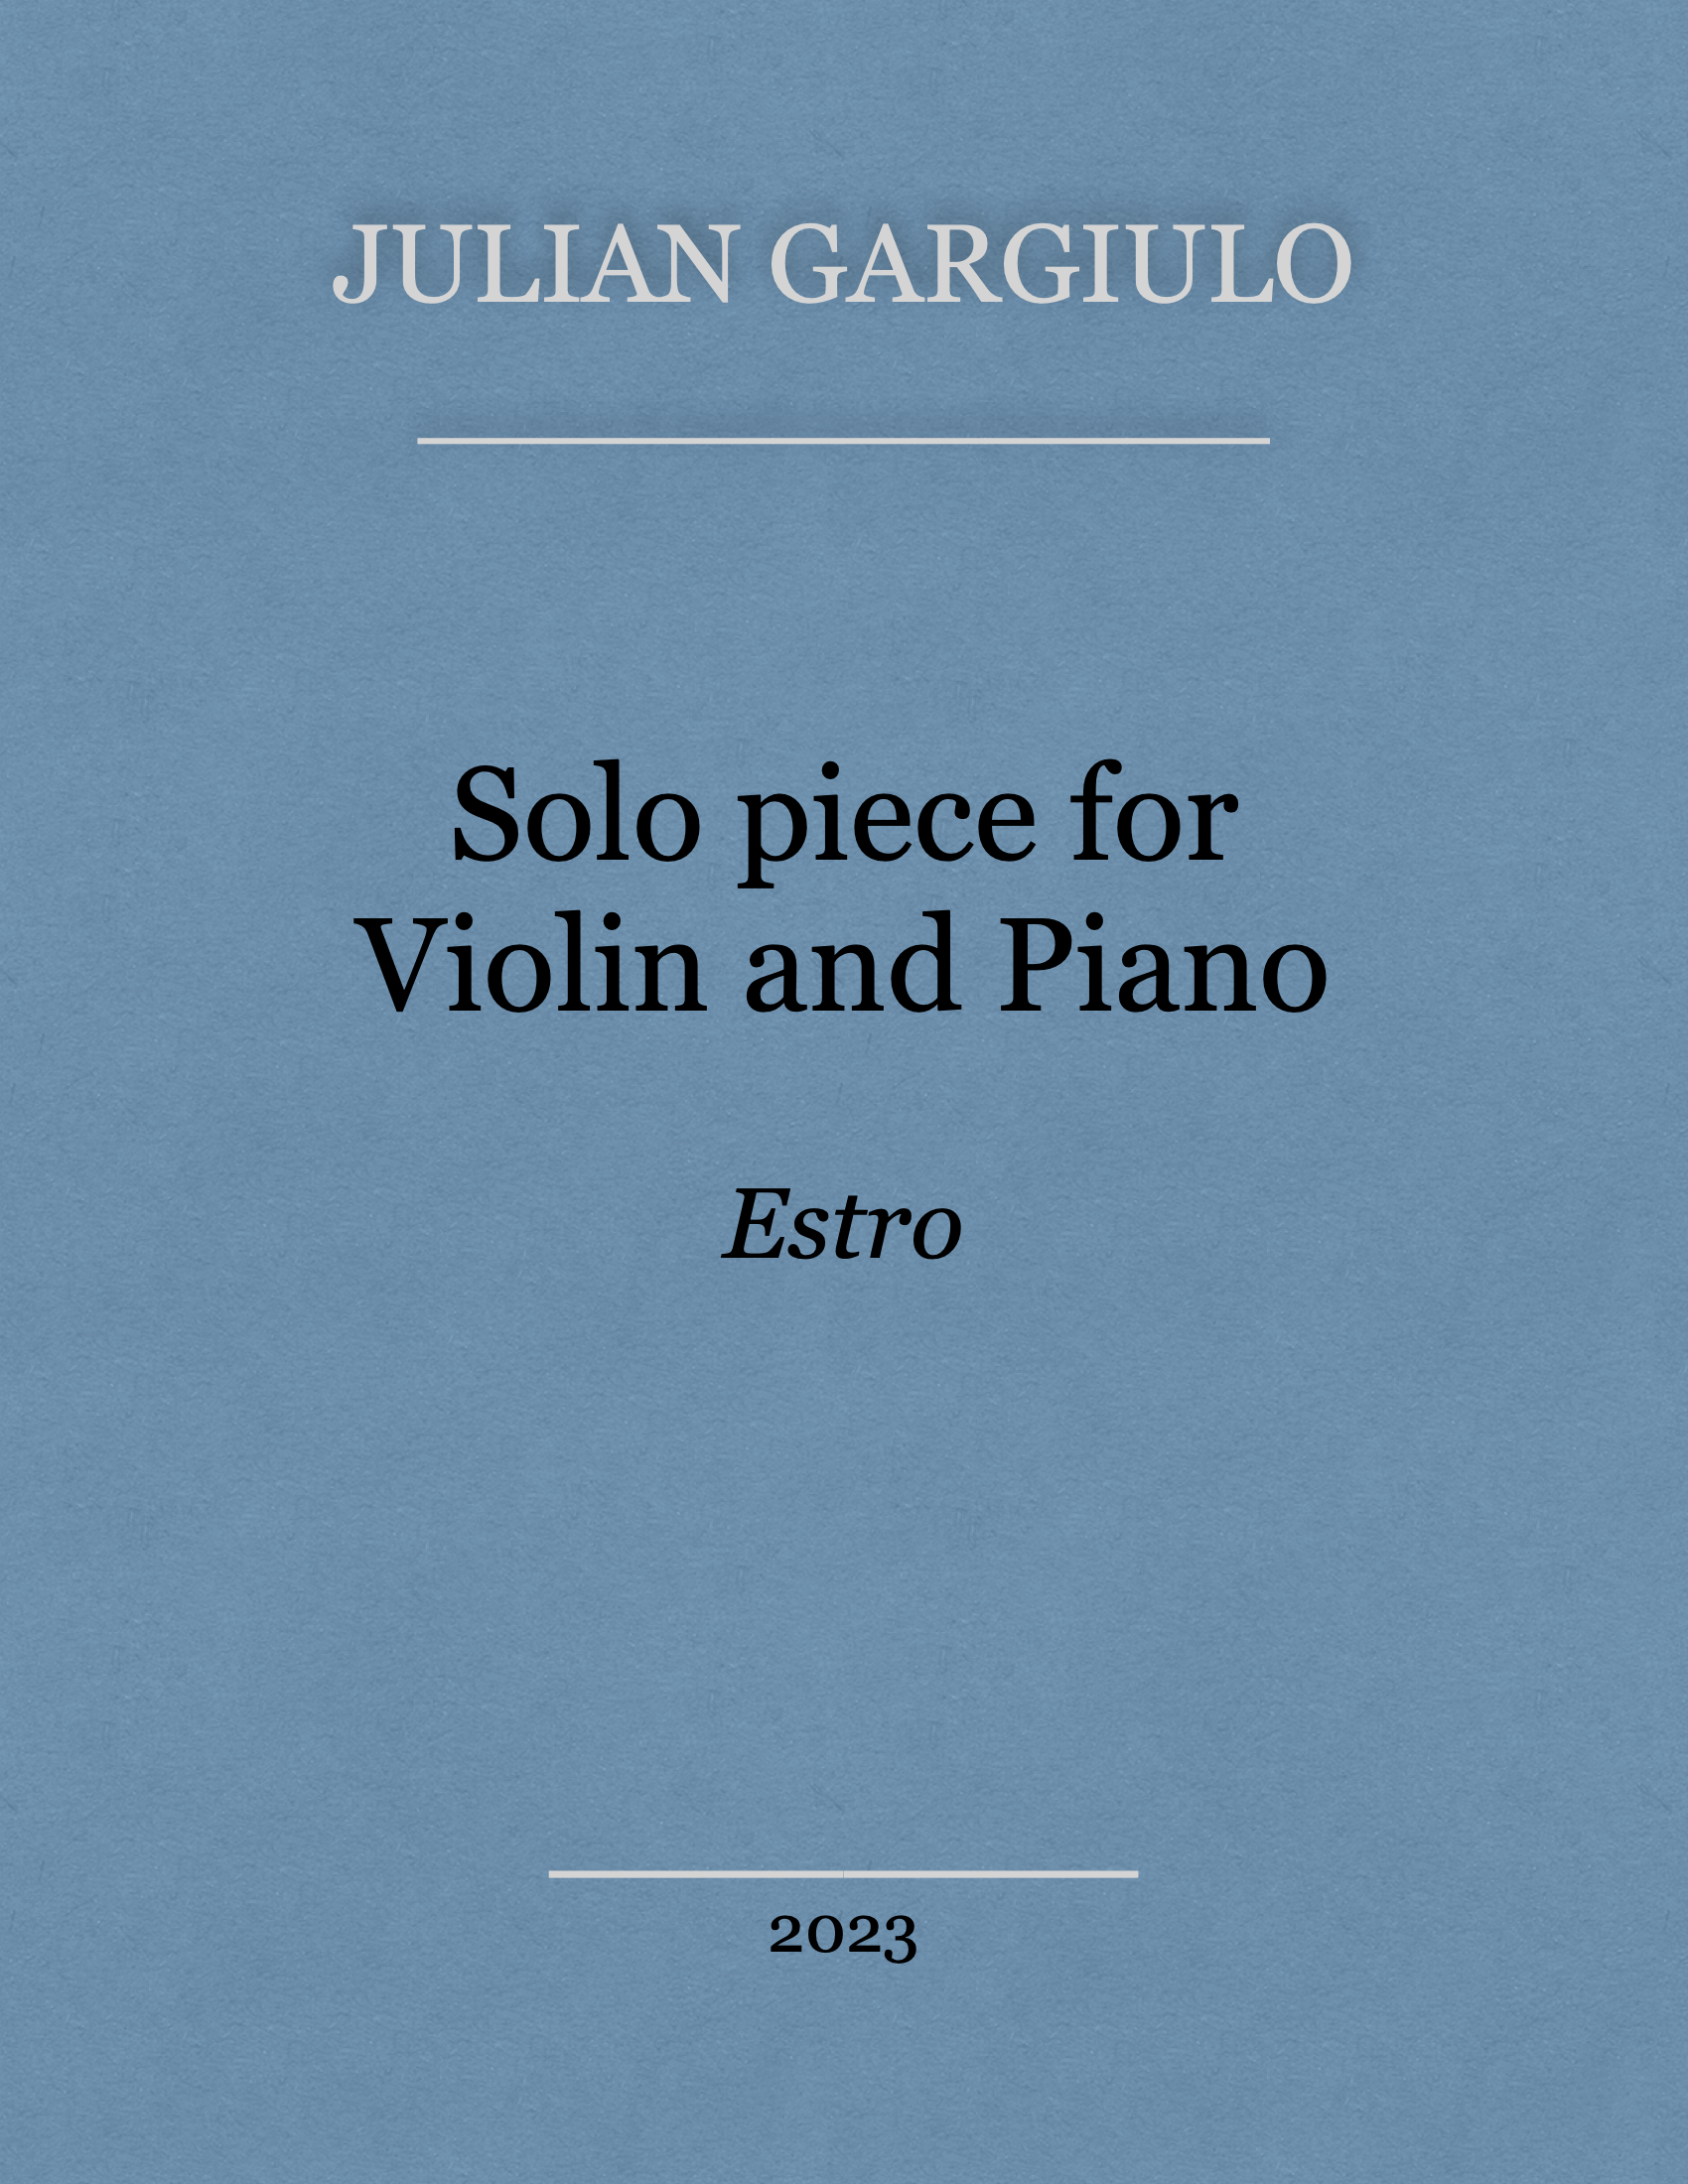 Solo piece for Violin and Piano - Estro